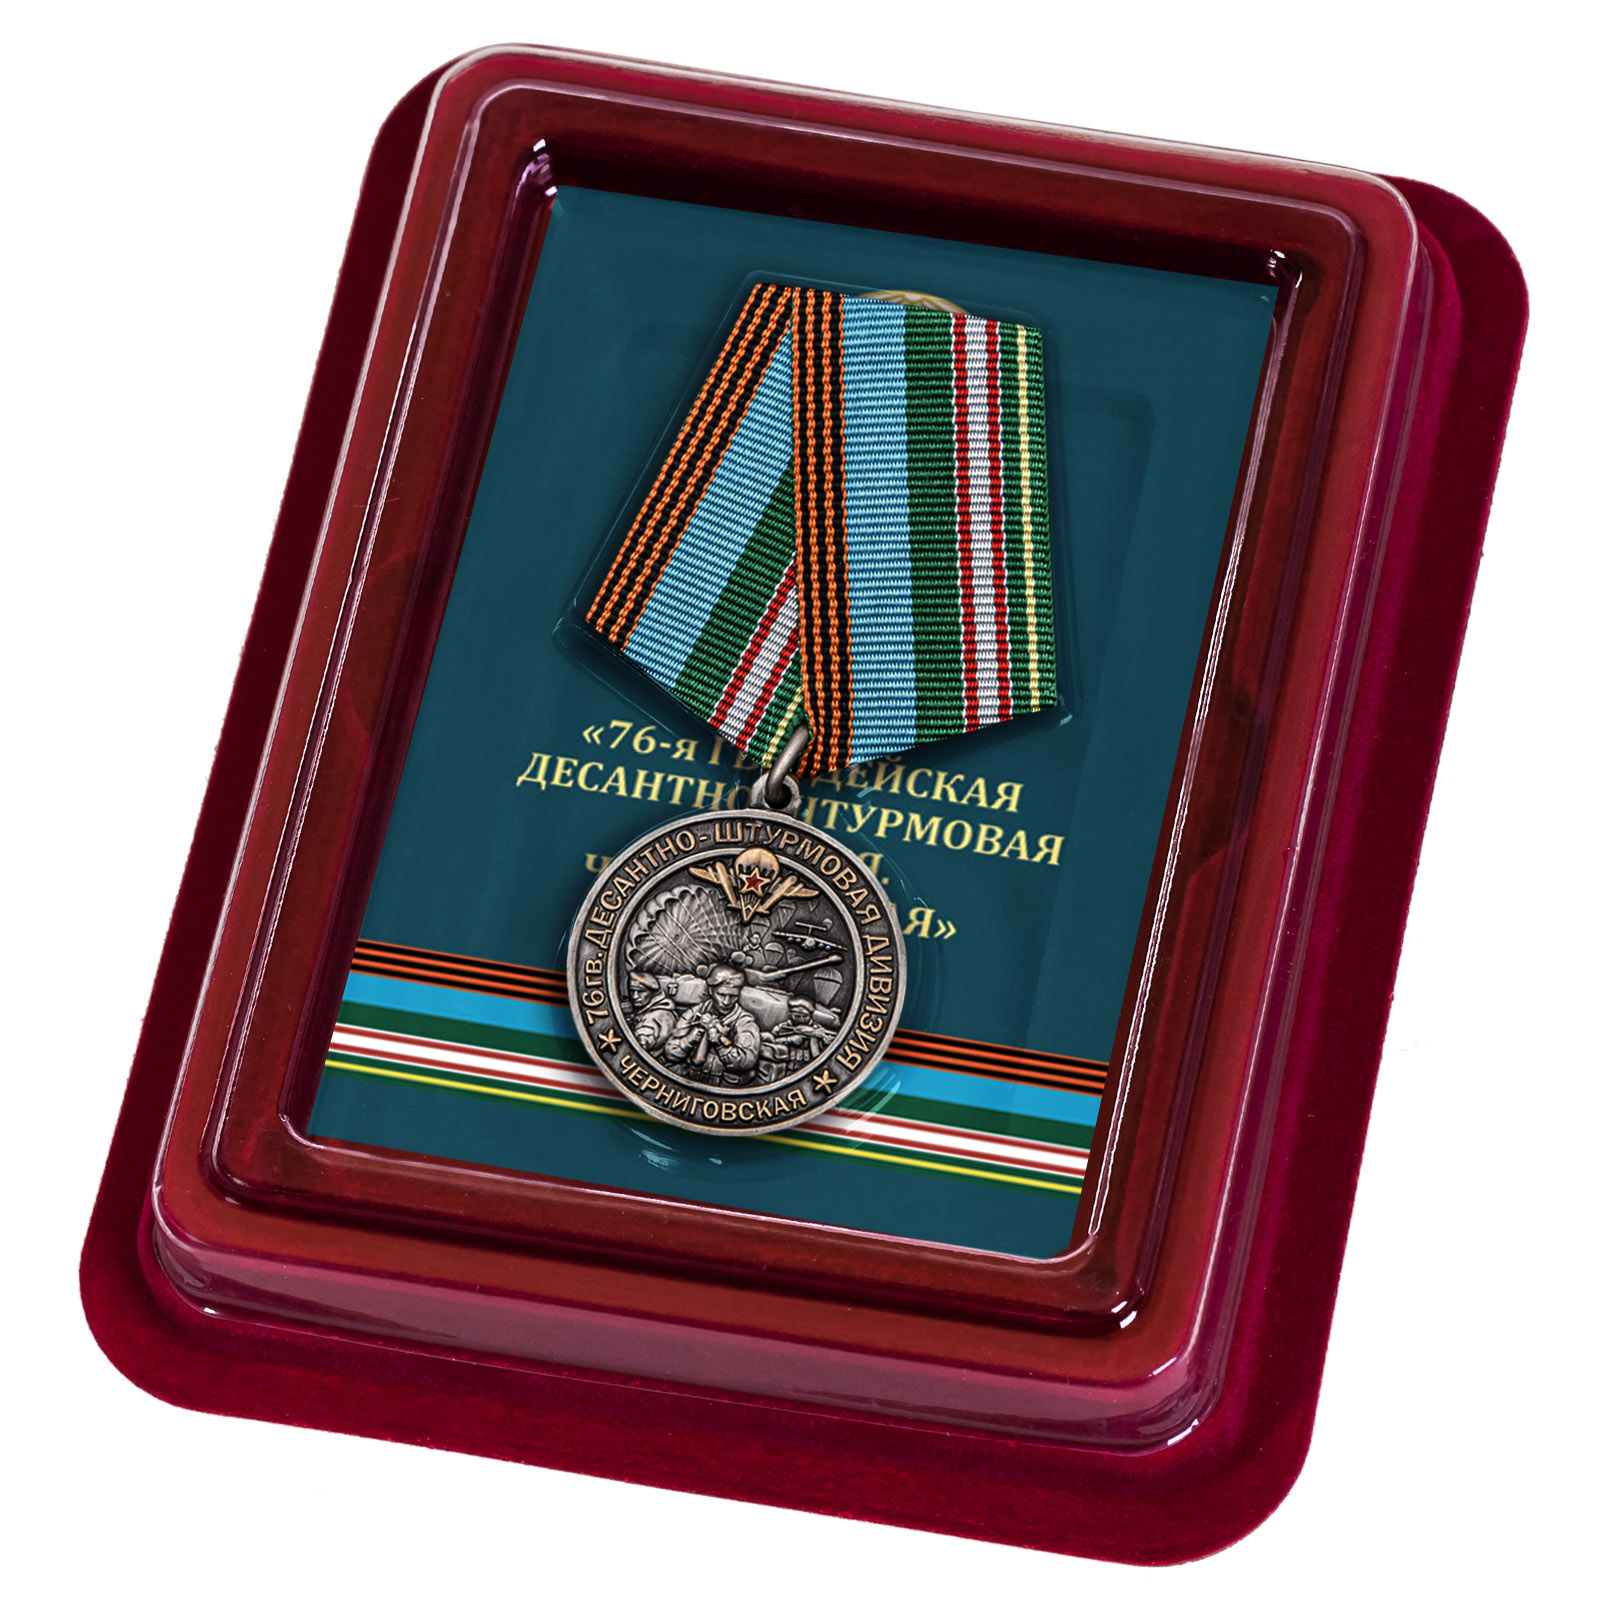 Купить медаль 76-я гв. Десантно-штурмовая дивизия оптом или в розницу